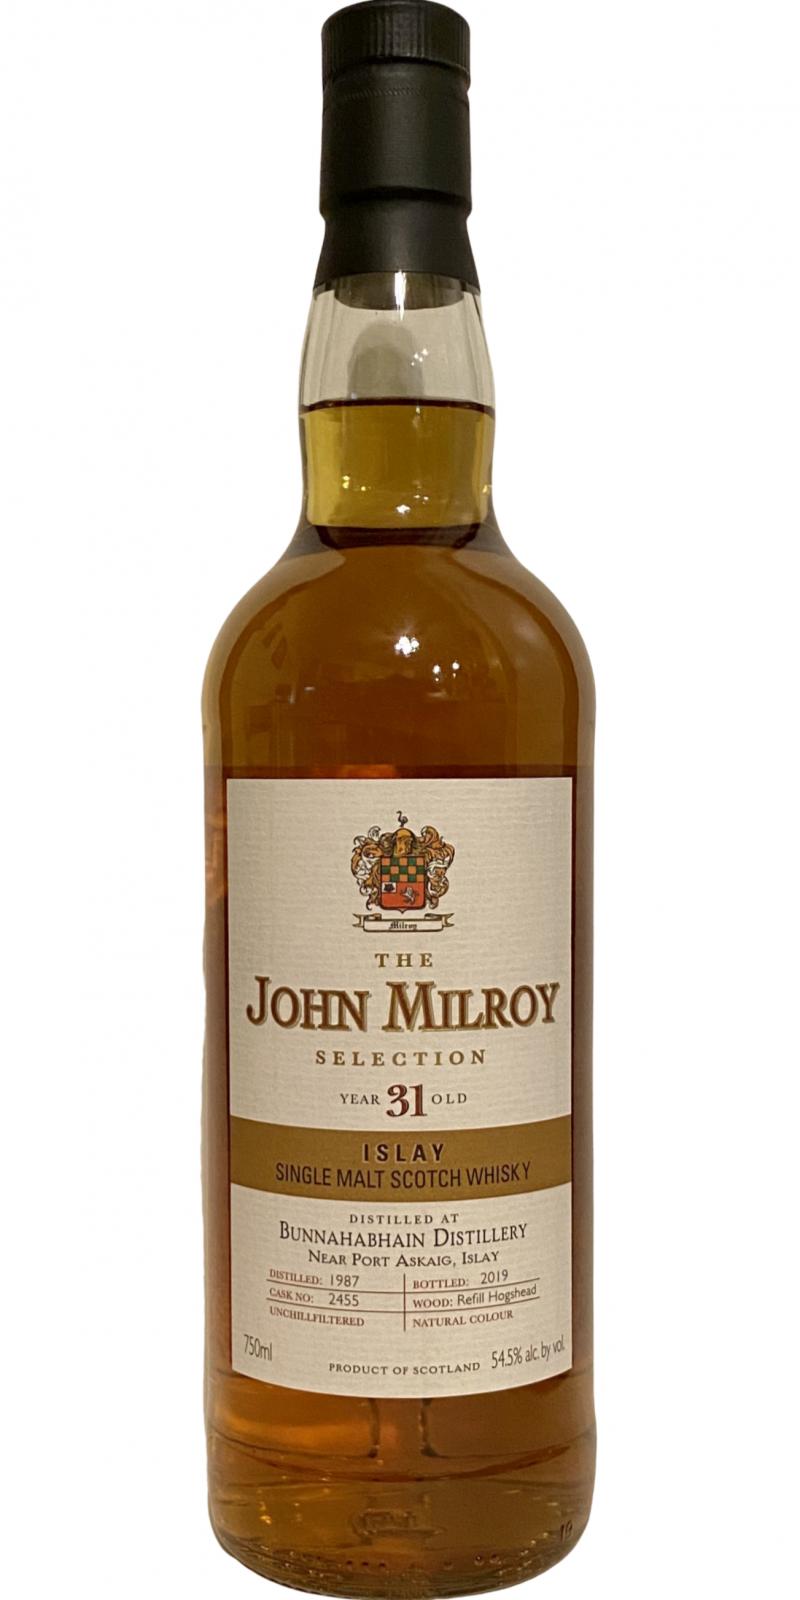 Bunnahabhain 1987 JY The John Milroy Selection Refill Hogshead #2455 54.5% 750ml